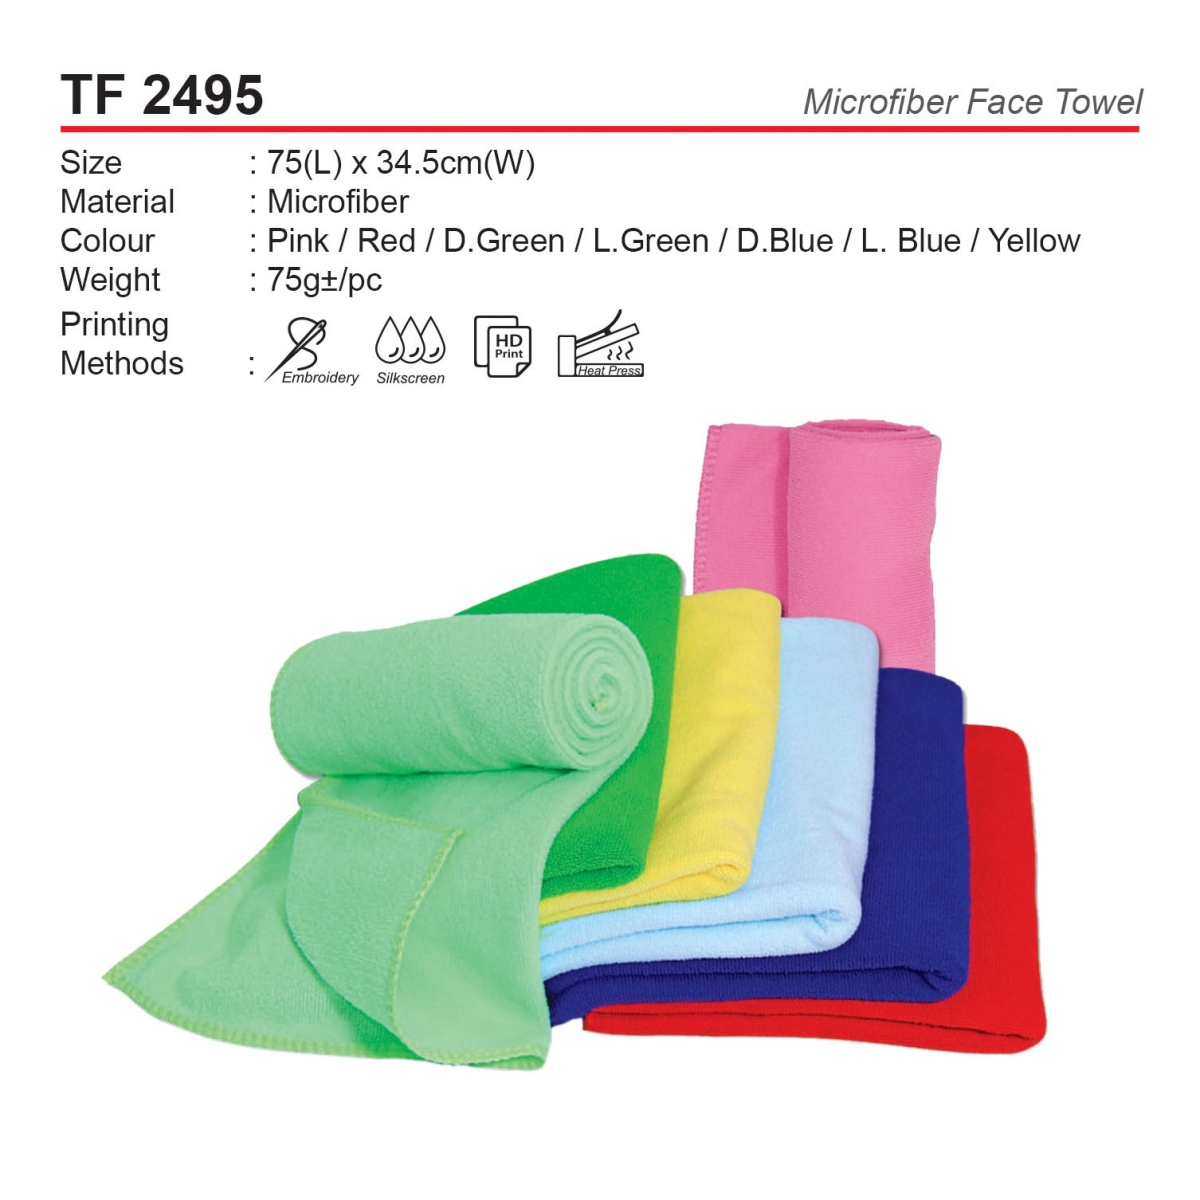 TF 2495 Microfiber Face Towel Towels & Cloth Items Malaysia, Melaka,  Selangor, Kuala Lumpur (KL), Johor Bahru (JB), Singapore Supplier,  Manufacturer, Wholesaler, Supply | ALLAN D'LIOUS MARKETING (MALAYSIA) SDN.  BHD.